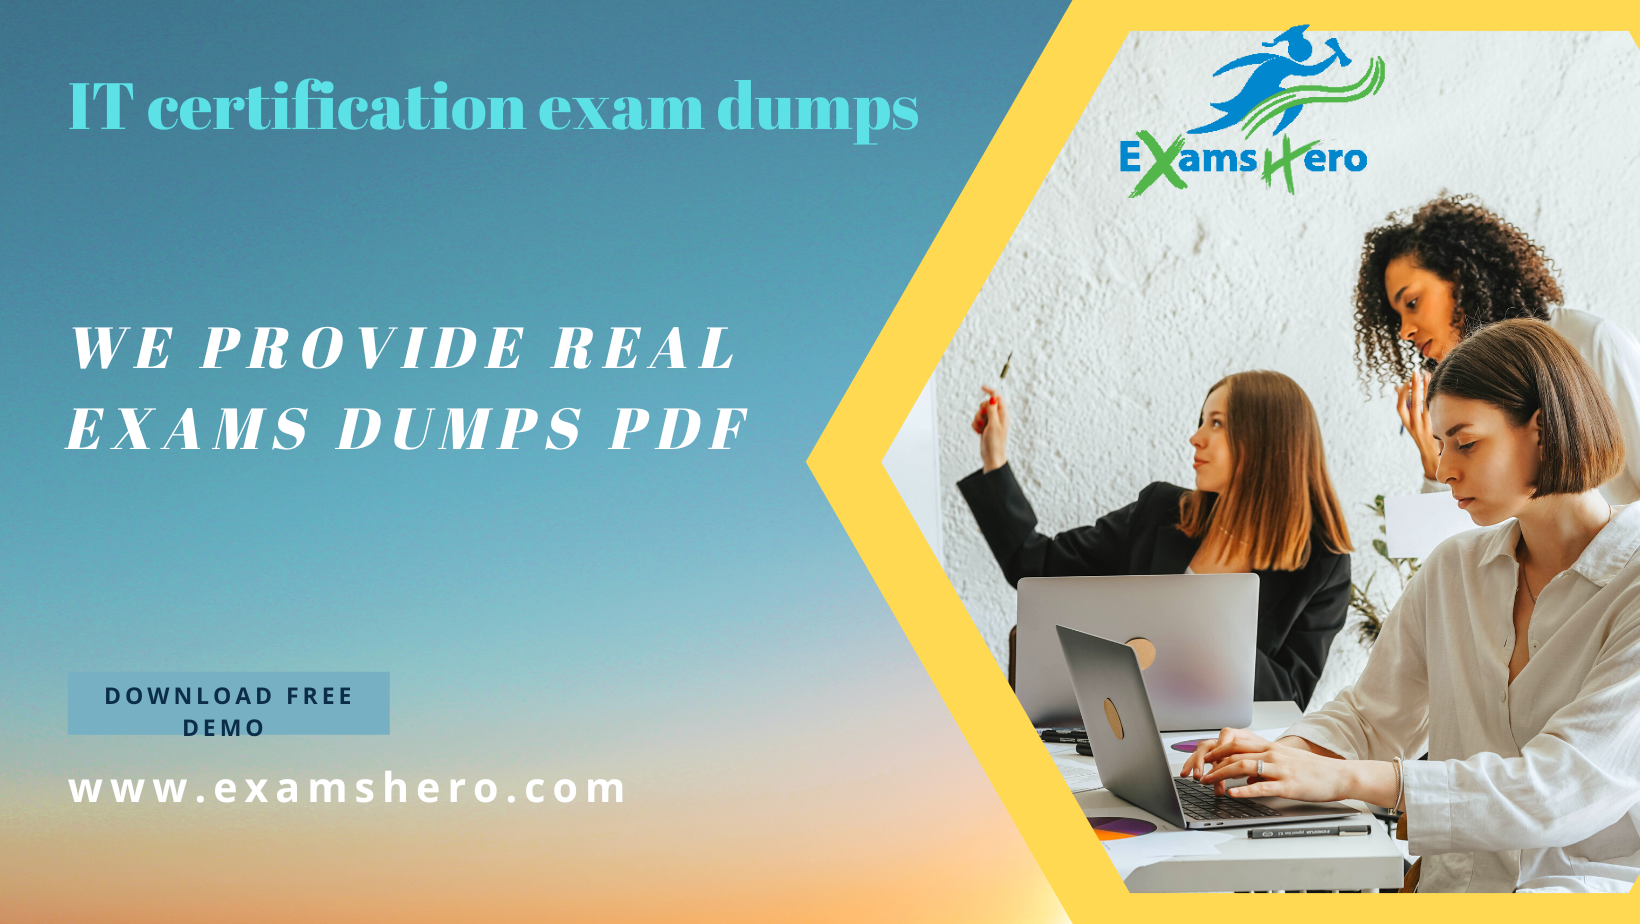 core exam exam dumps pdf question actual exam free exam